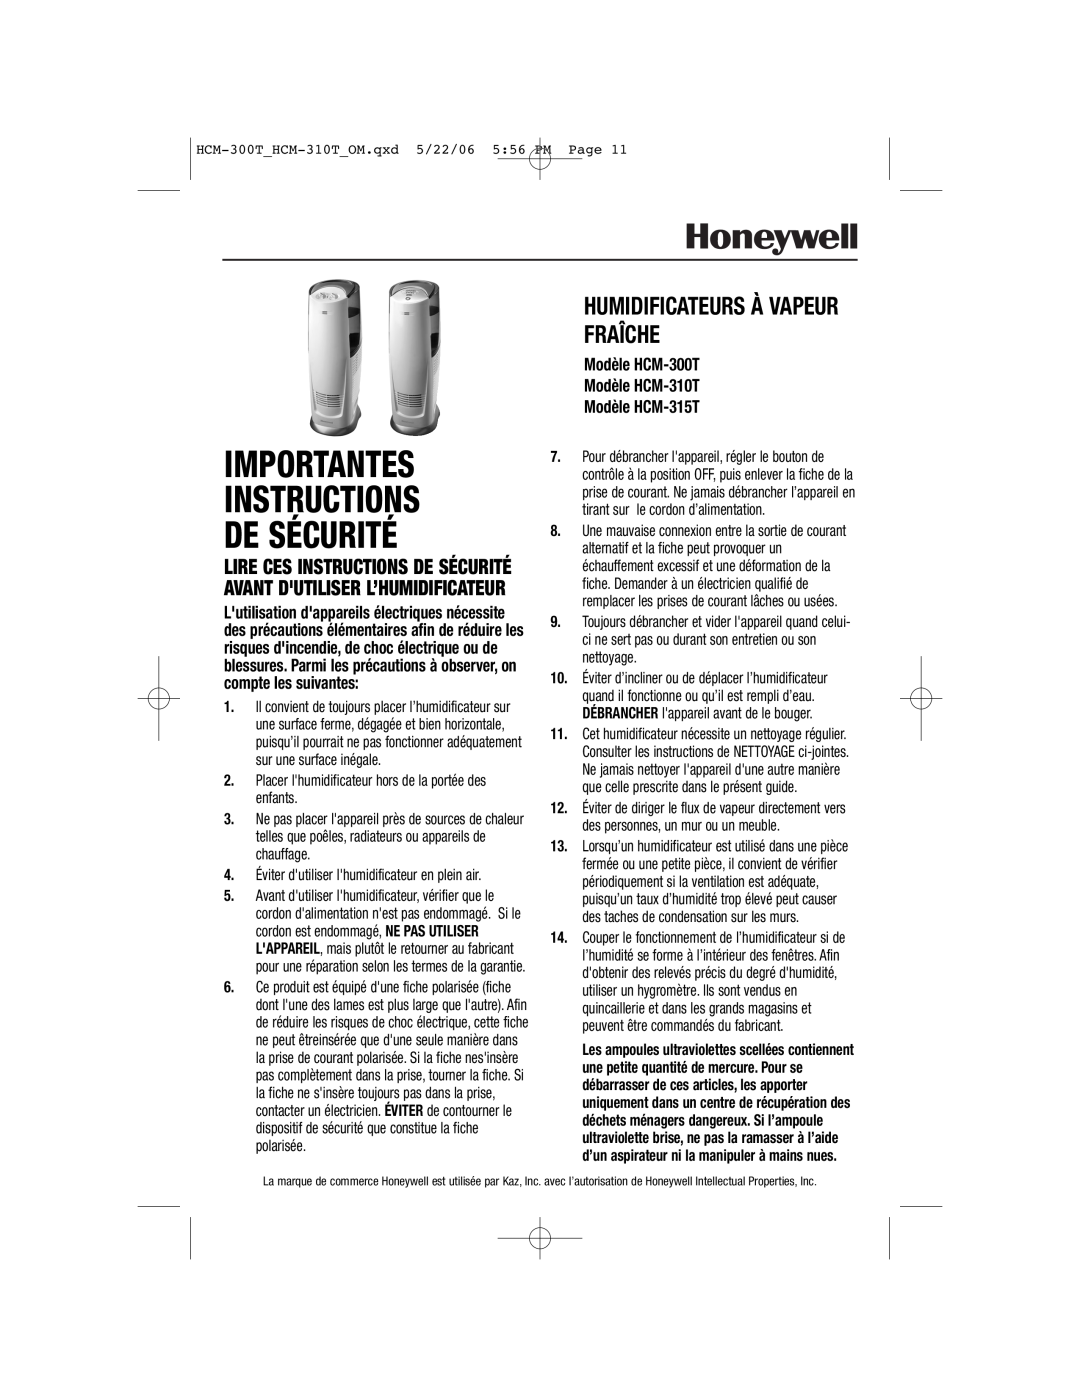 Honeywell HCM-300T, HCM-315T, HCM-310T Importantes Instructions De Sécurité, Humidificateurs À Vapeur Fraîche 